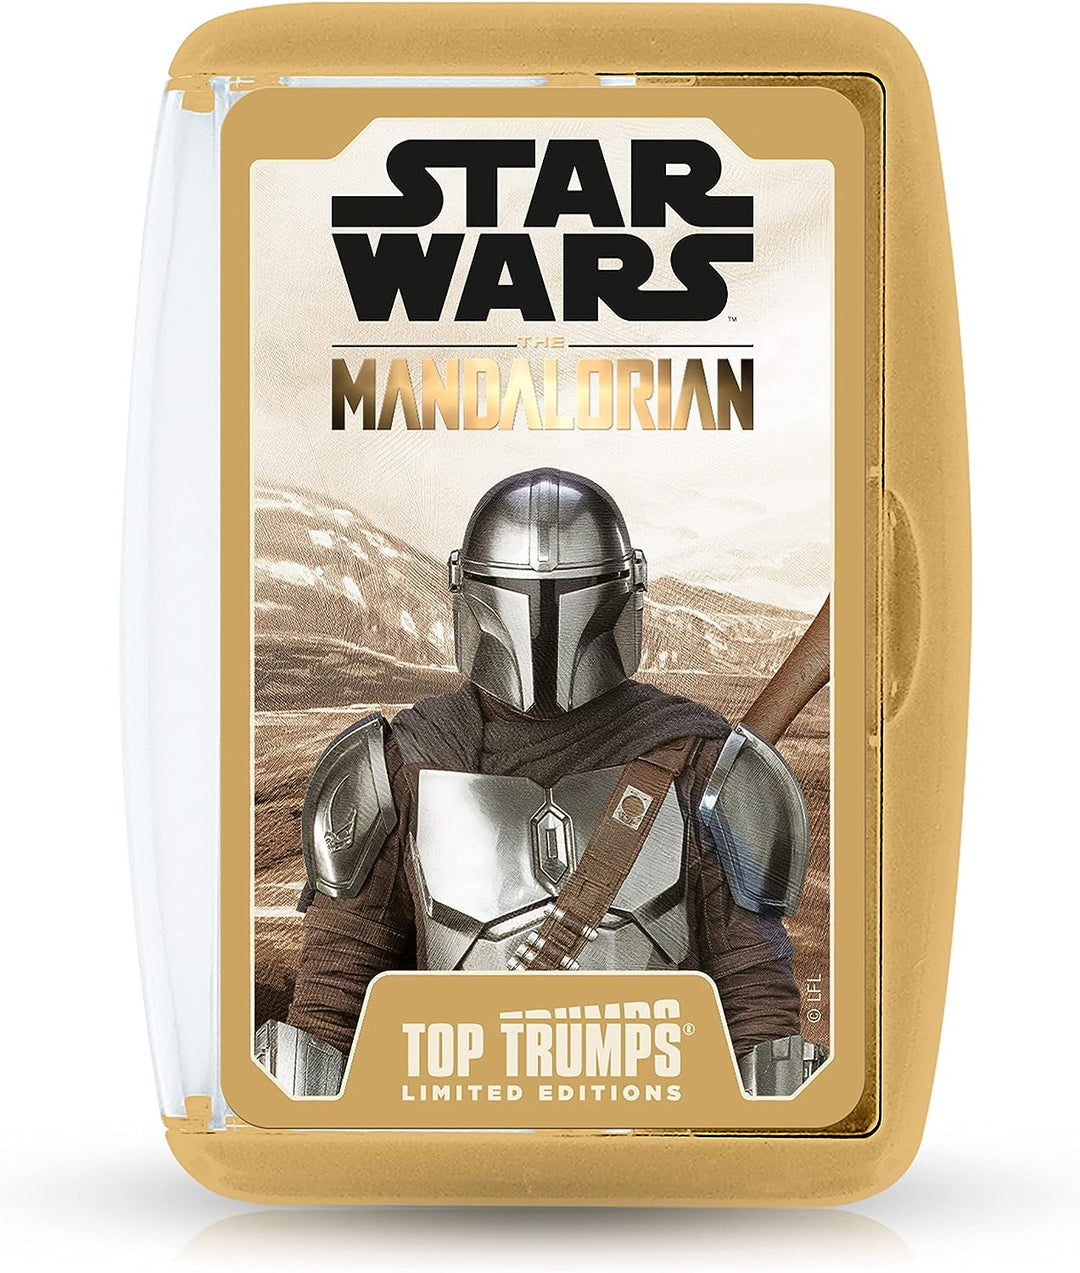 Top Trumps Limited Editions – Star Wars: The Mandalorian,WM01929-EN1-6